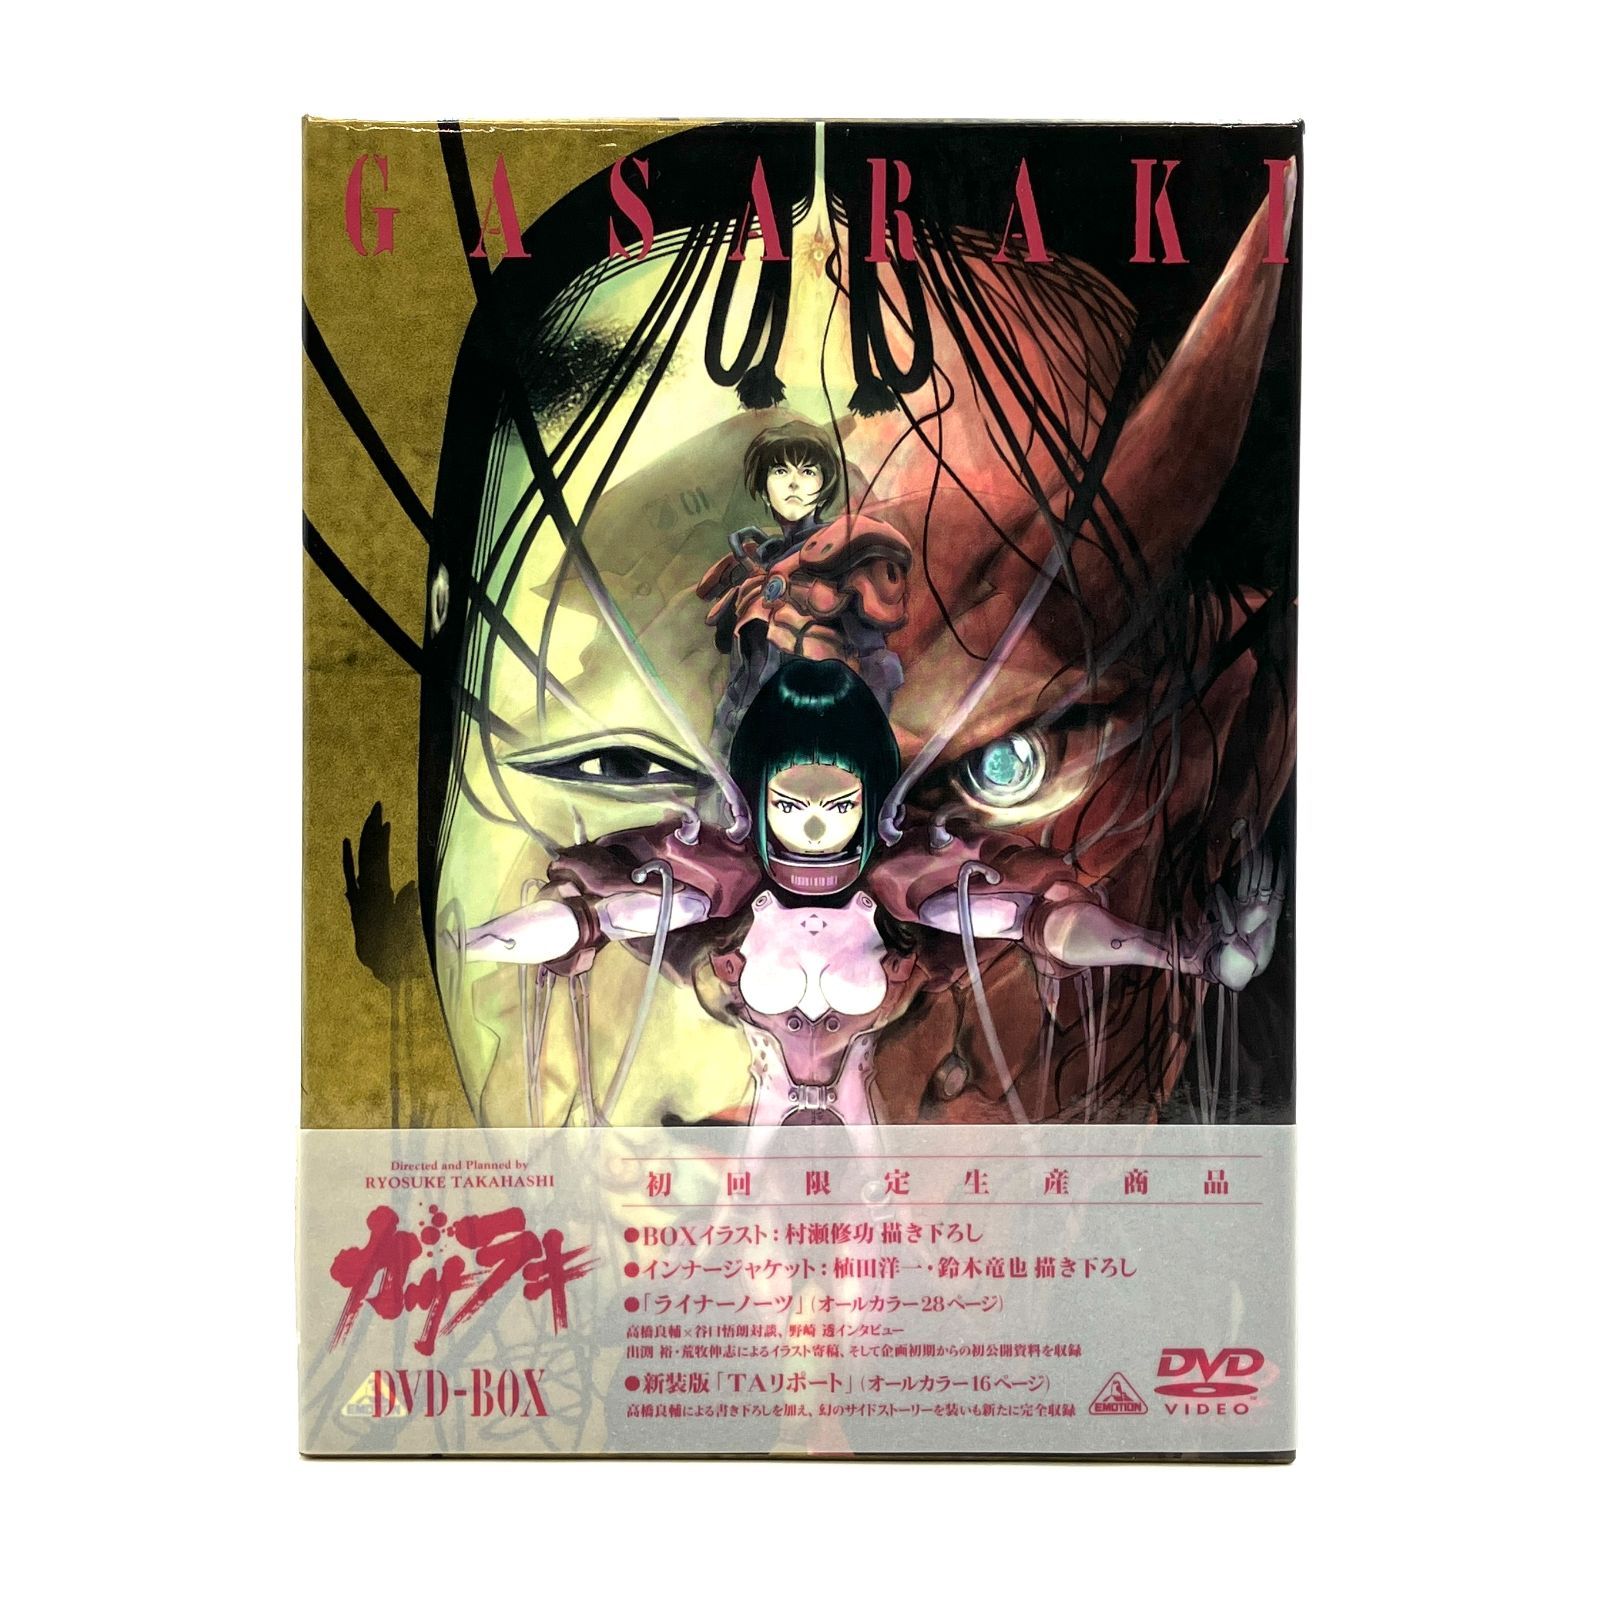 ガサラキ DVD-BOX 初回限定生産 6枚組 アニメ D-3670 - LKS MARKET